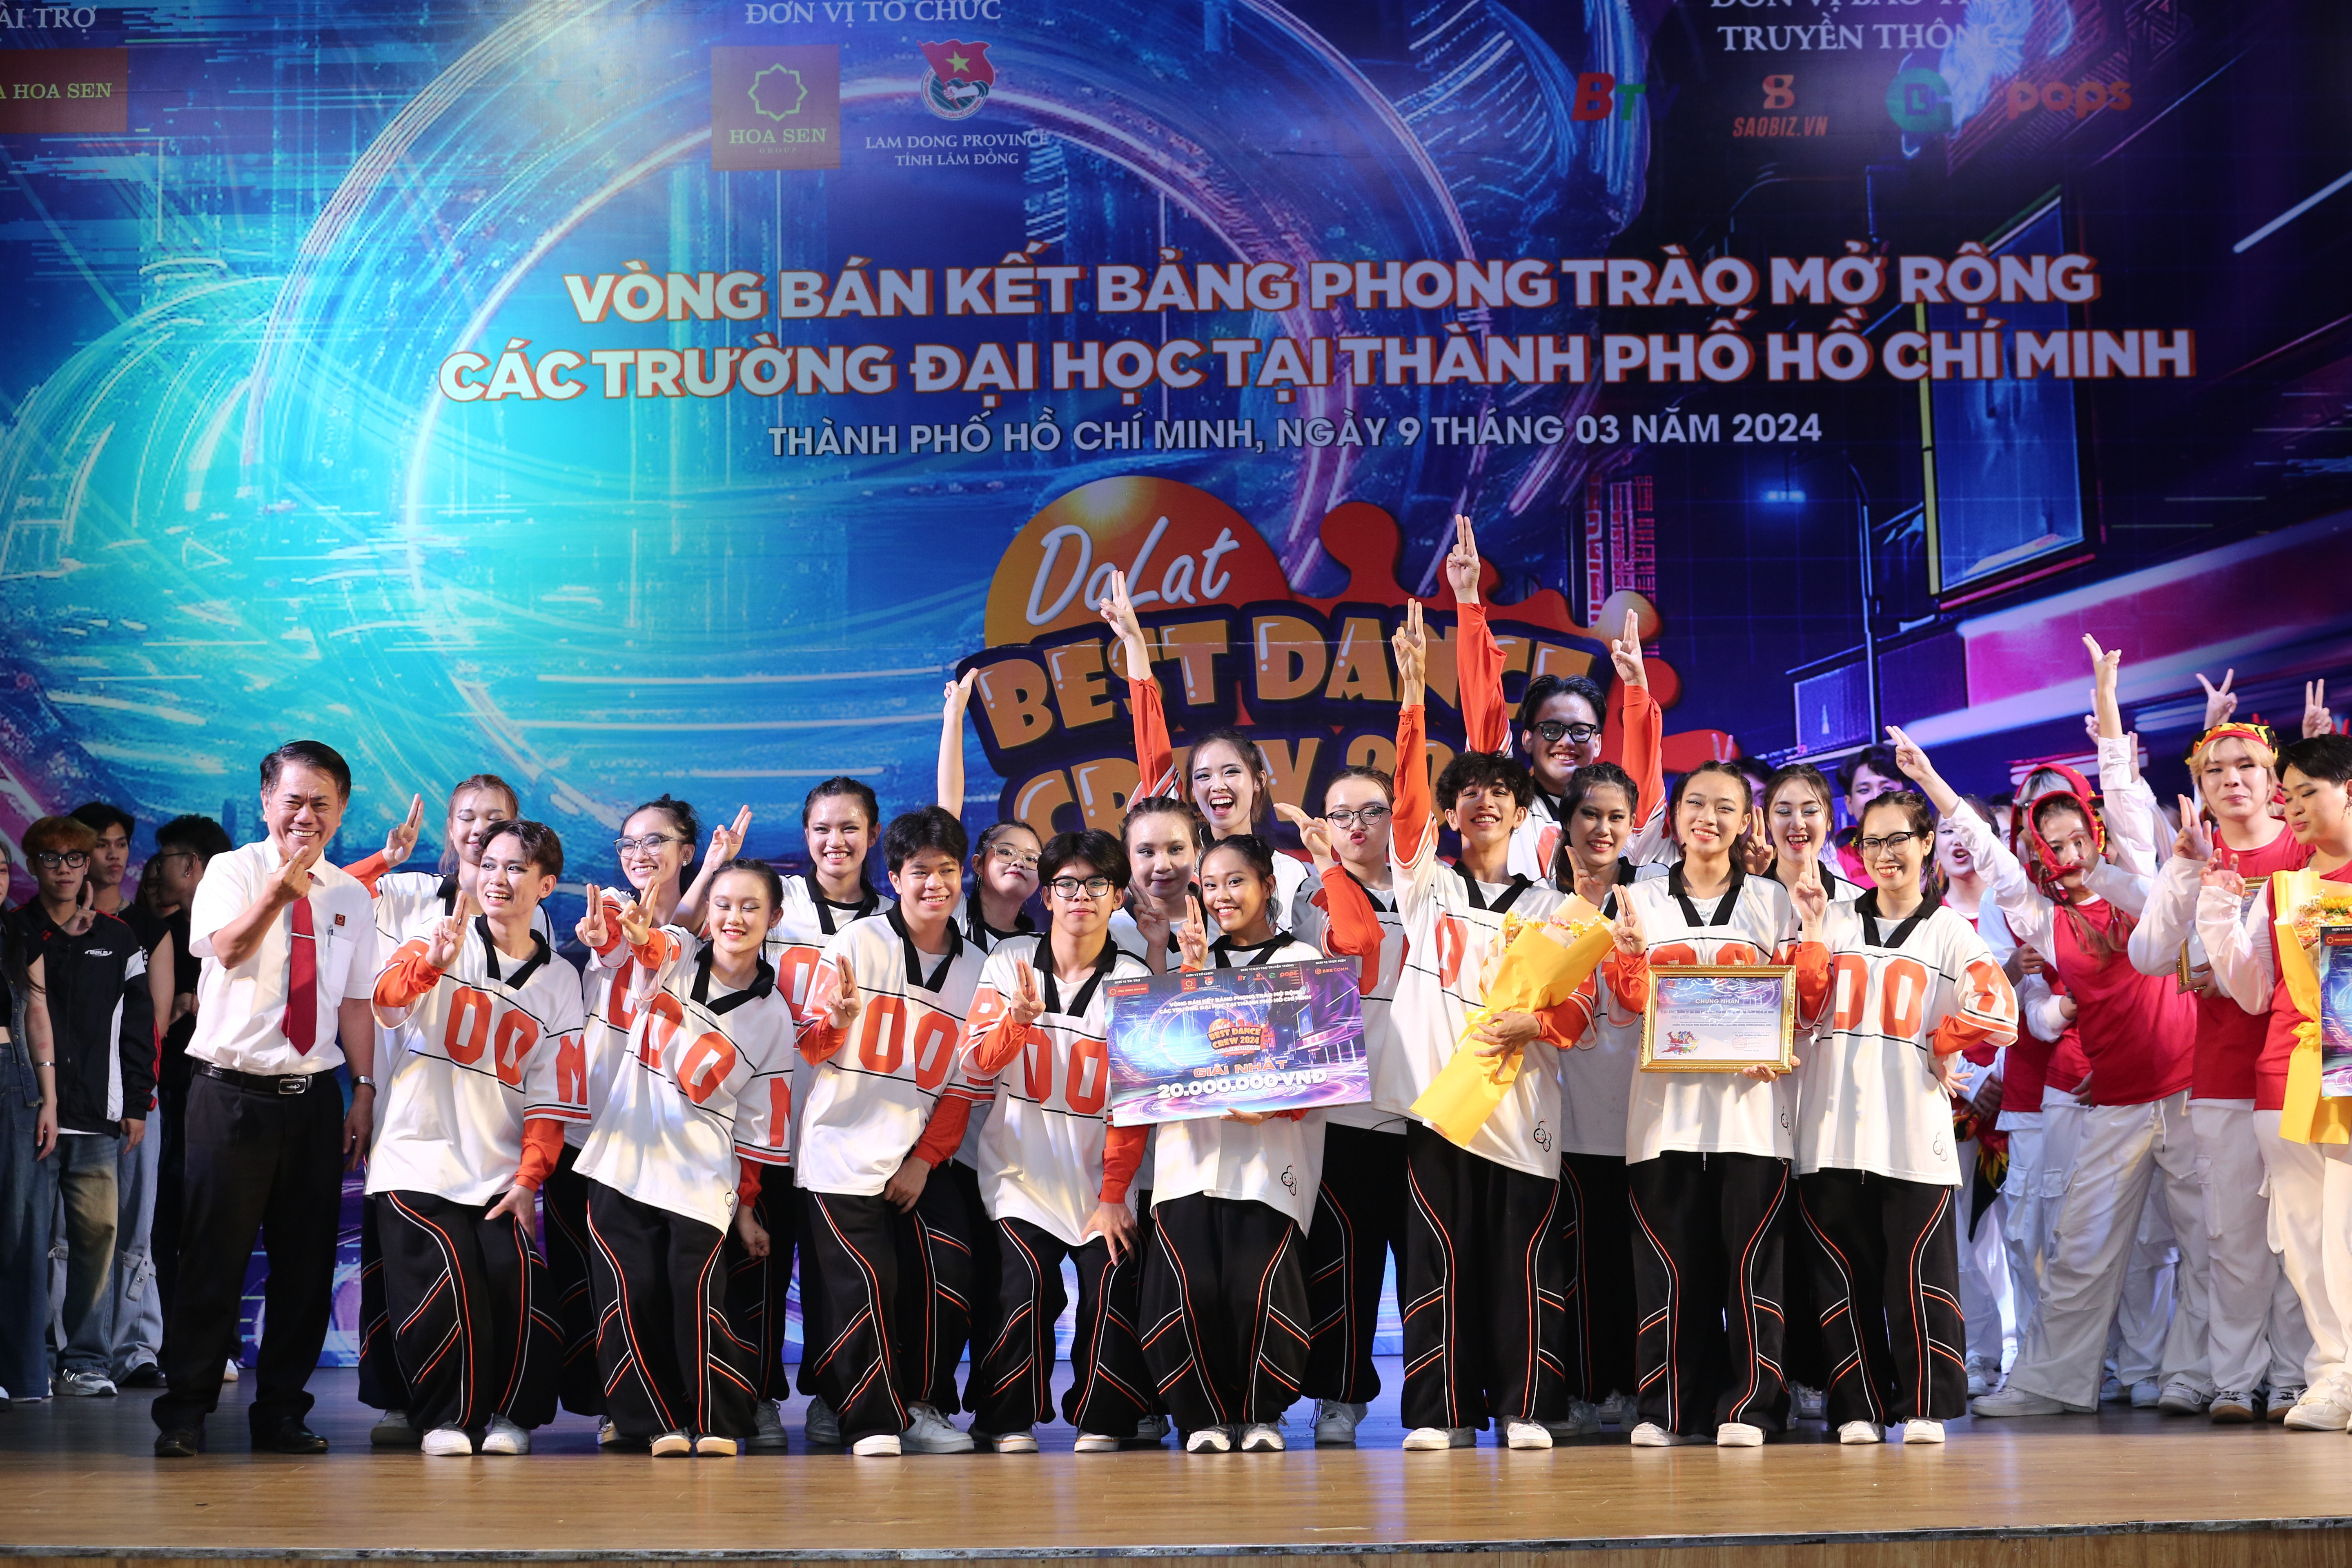 Giải Nhất chung cuộc đã thuộc về Nhóm Big Boom Dance Team đến từ Trường Đại học Khoa học Xã hội và Nhân Văn.